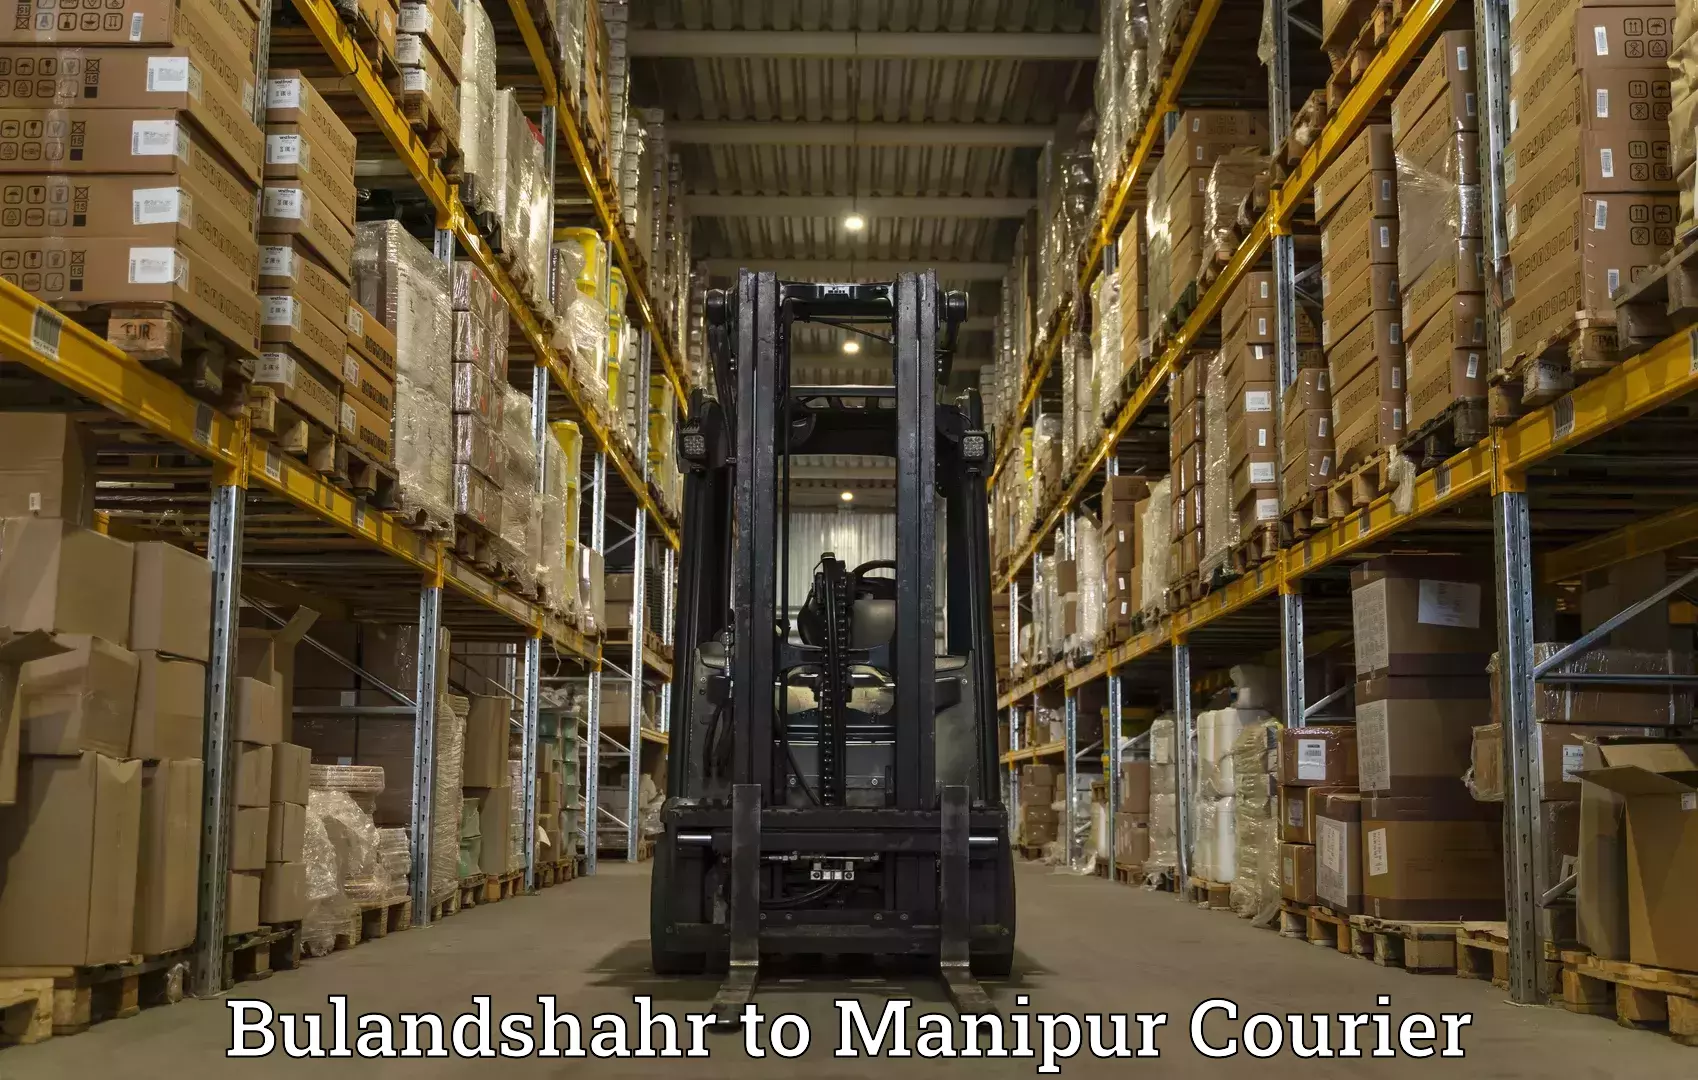 Cross-border shipping Bulandshahr to Chandel